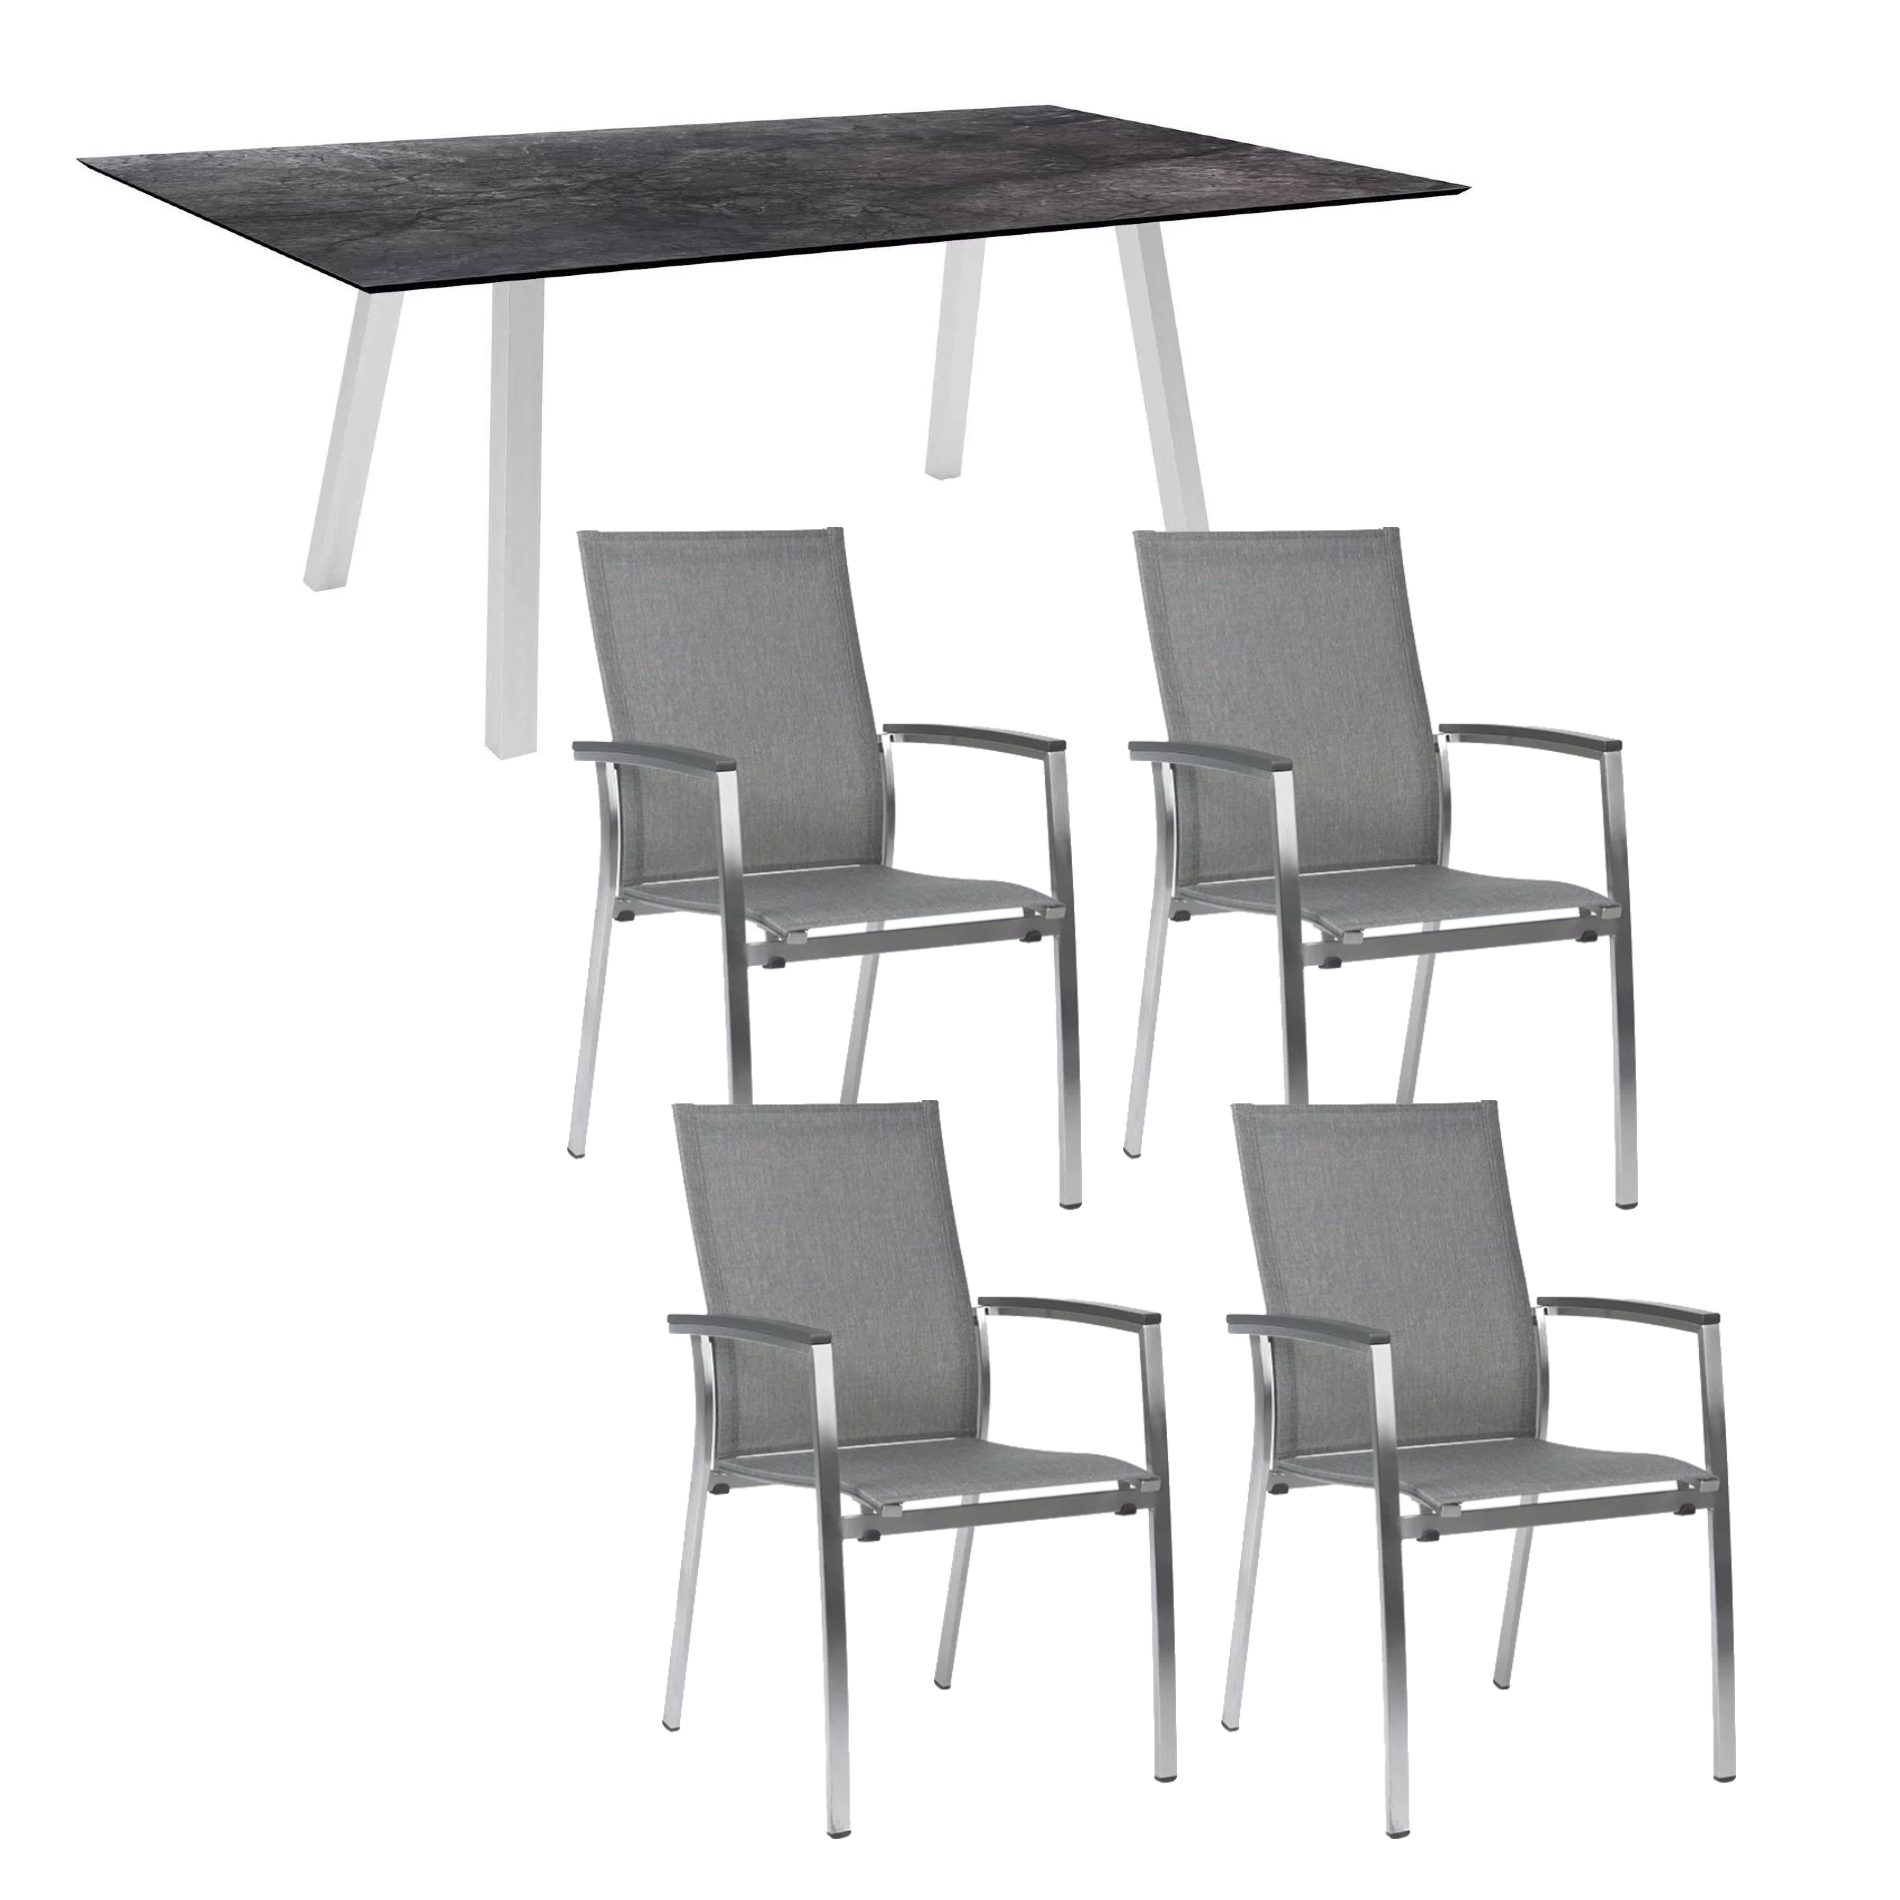 Stern Gartenmöbel-Set mit Stuhl "Mika" und Gartentisch "Interno" 180x100 cm, Gestell Edelstahl, Sitzfläche Textil Leinen grau, Tischplatte HPL Dark Marble